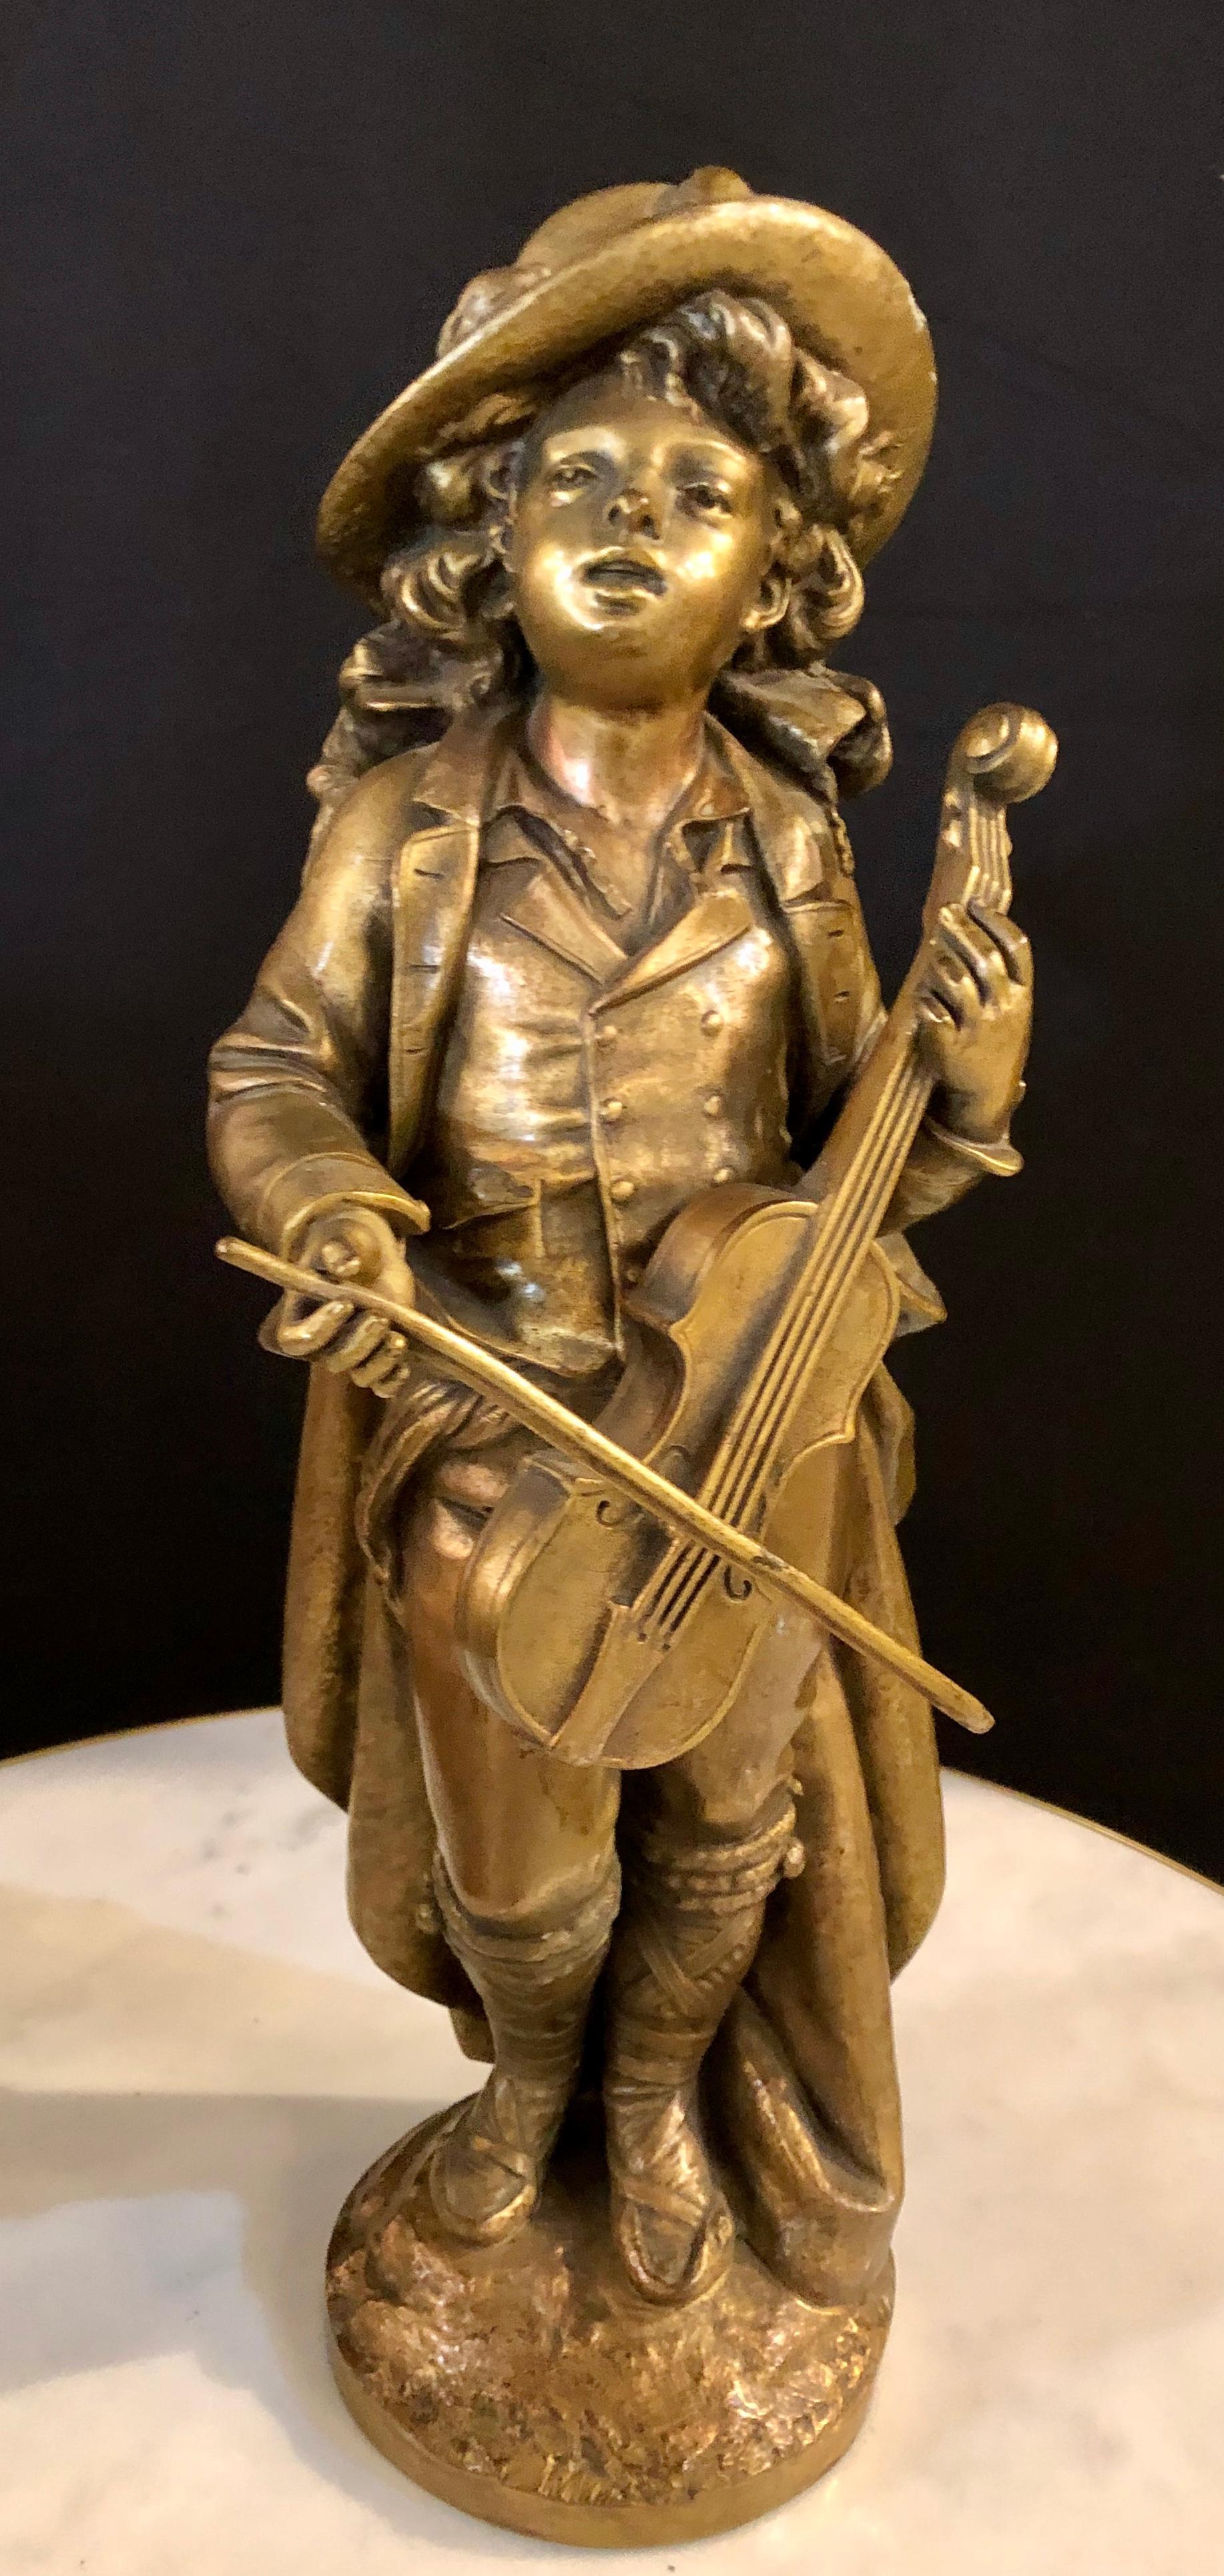 Adolph Maubach signé 19ème siècle. Sculpture en bronze d'un jeune violoniste. Ce très joli bronze finement coulé est certain d'attirer l'attention dans n'importe quelle pièce de la maison. Doté d'une fine patine brun doré:: cet étonnant petit